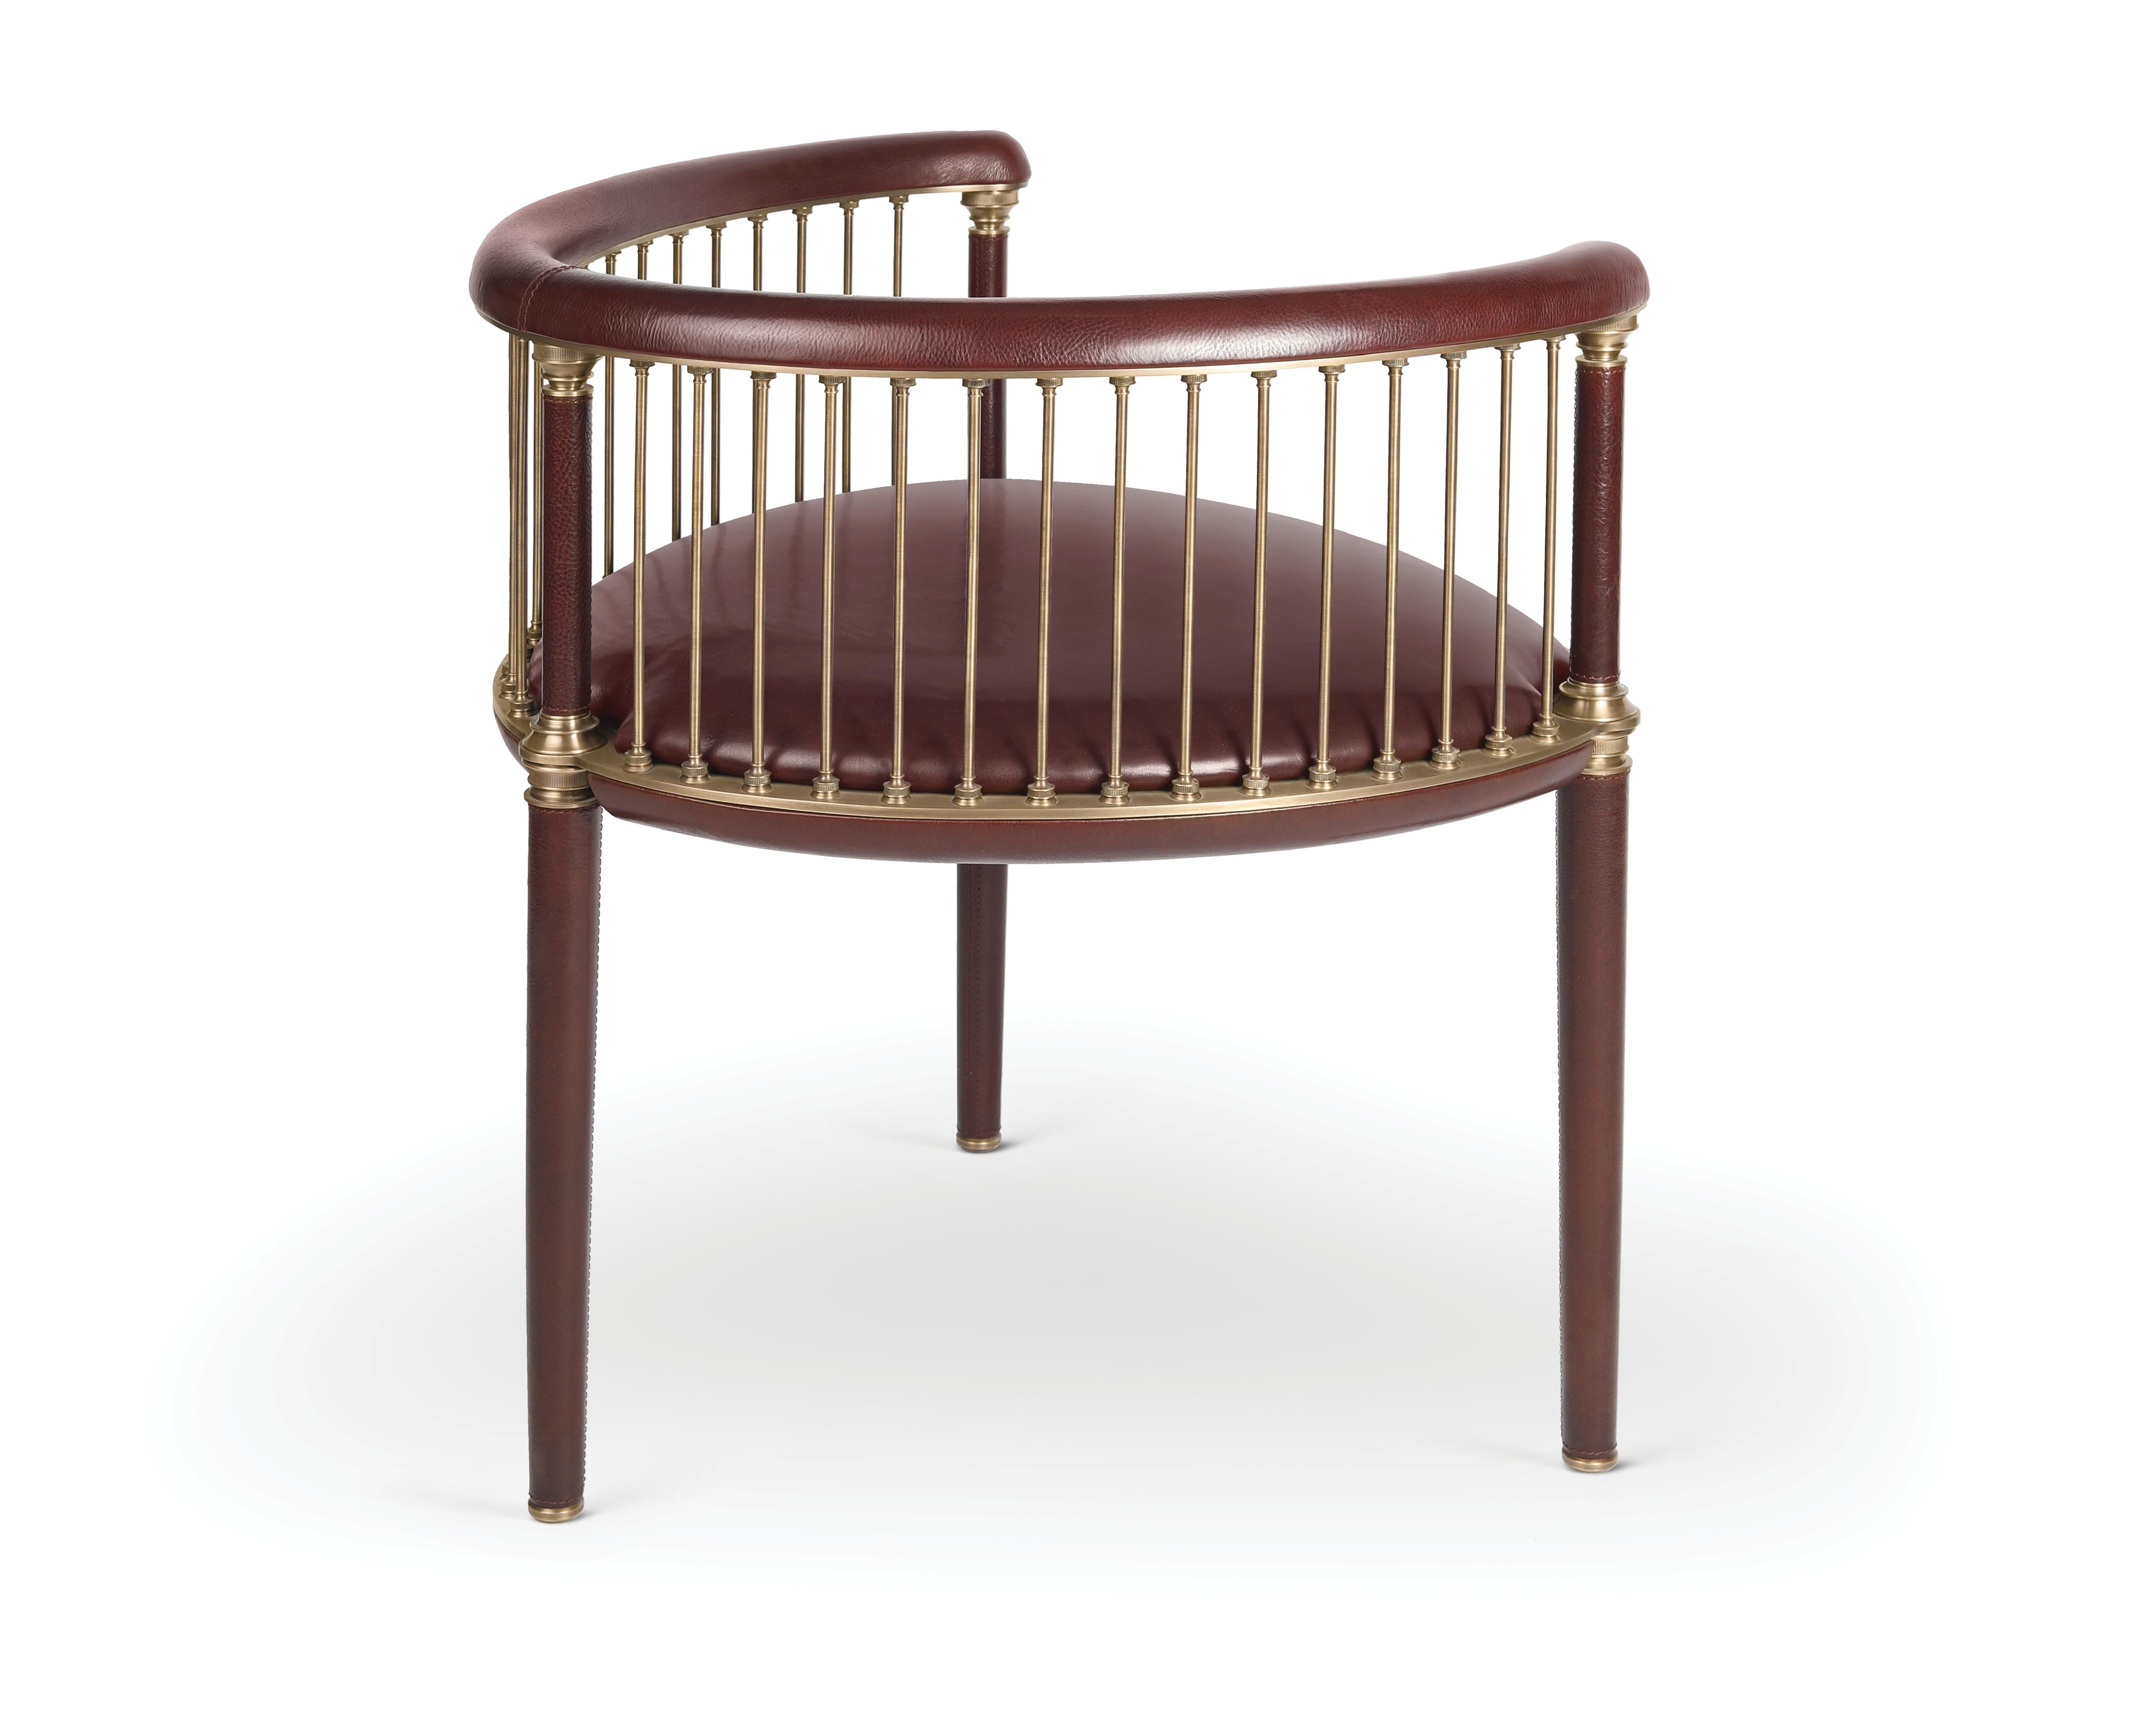 Vintage Dreibeiniger Rouen-Sessel von Madheke
Abmessungen: B 64,8 x T 60 x H 69,5 cm
MATERIALIEN: Leder, Holz, Metall

Das schöne und raffinierte Design des ROUEN ist inspiriert von einer zeitlosen, vergangenen Vintage-Ära. Die schlanken